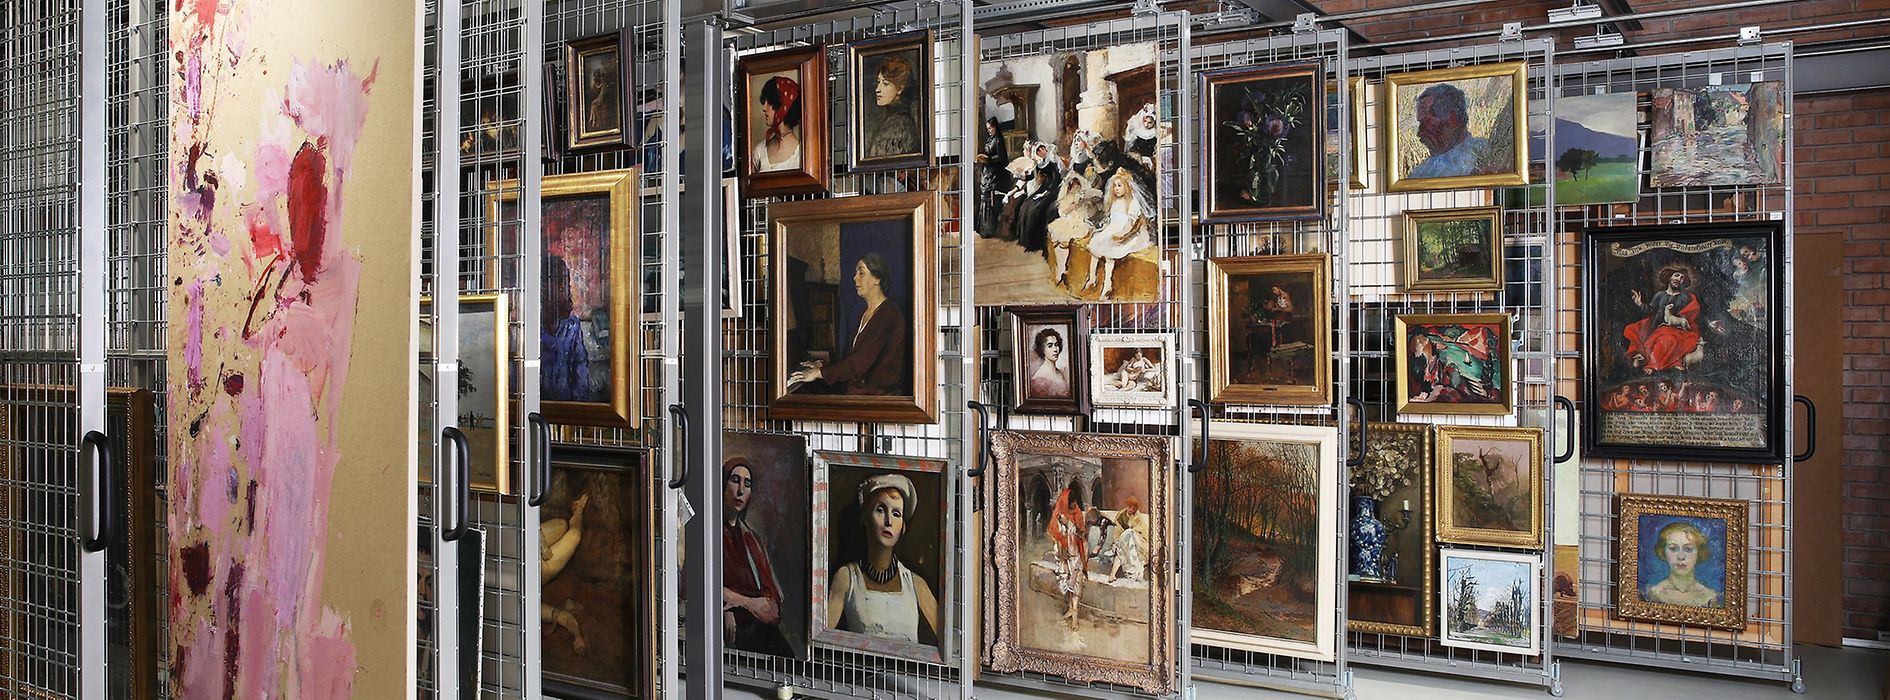 Museumsdepot des Leopold Museum mit Blick auf Gemälde, die auf Gitterwänden hängen